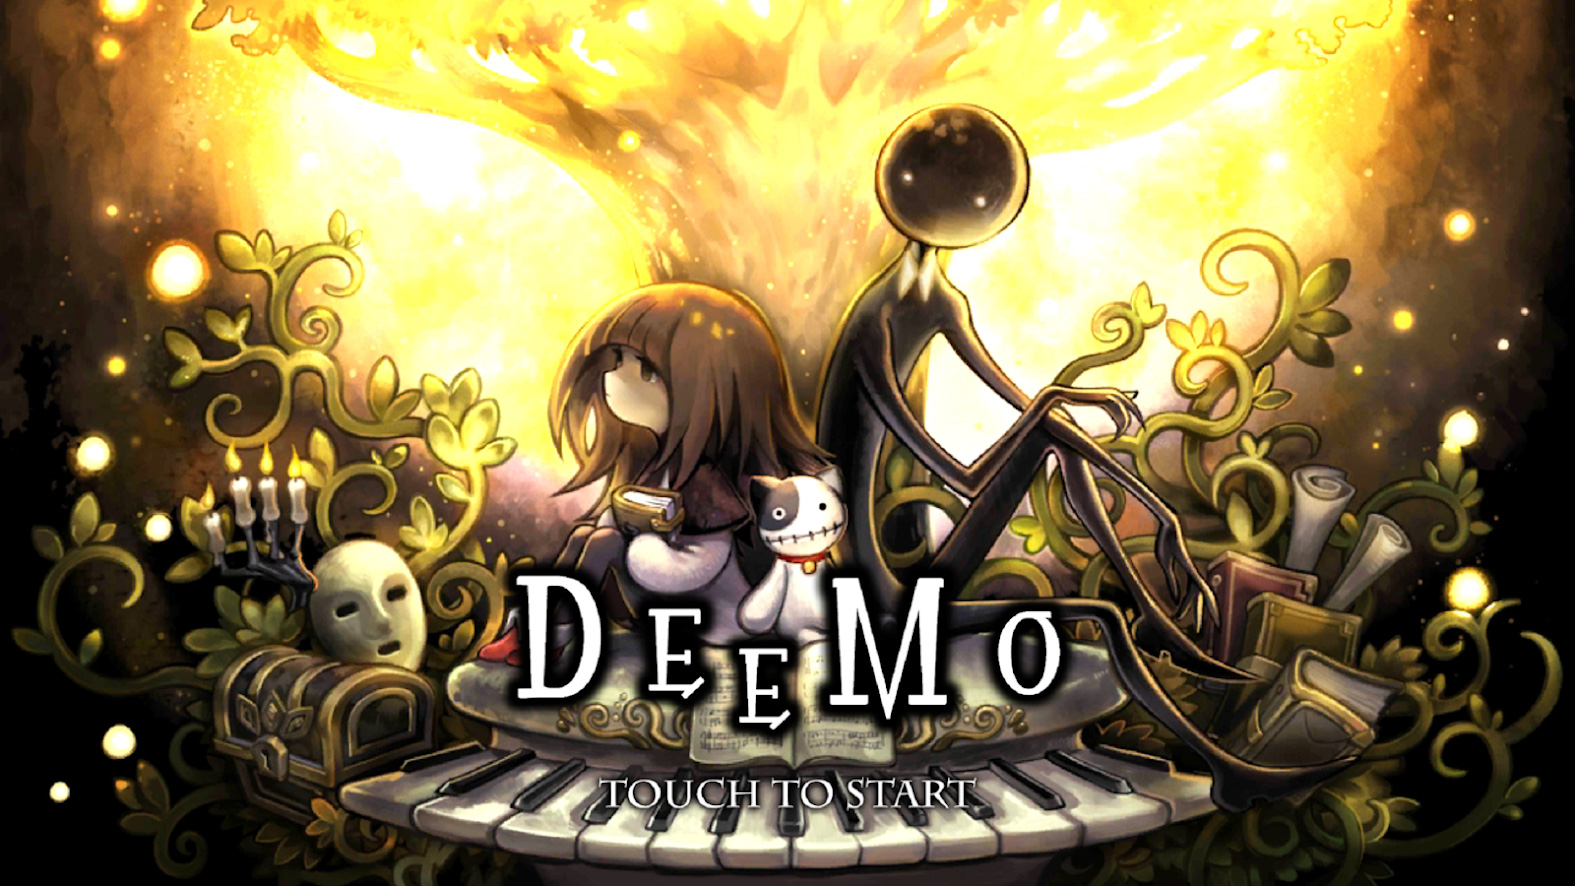 Deemo, Một Trong Những Game Mobile Hay Nhất Lịch Sử, Từng Giữ Vị Trí Số 1  Trên App Store Đã Chính Thức Có Phần Ii